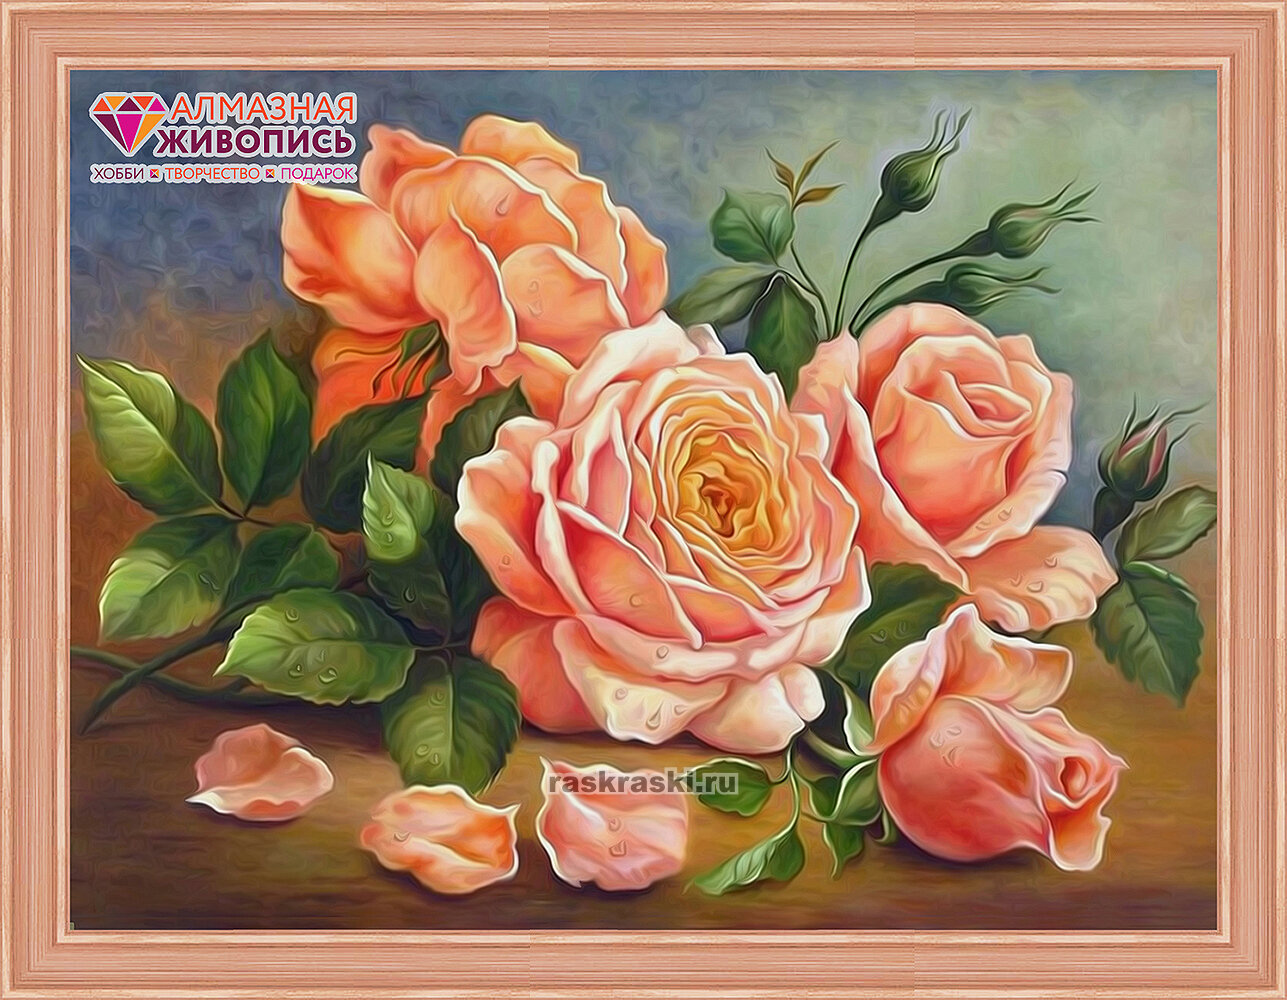 Ароматные розы (АЖ-1514) - картина стразами Алмазная живопись - фото №9